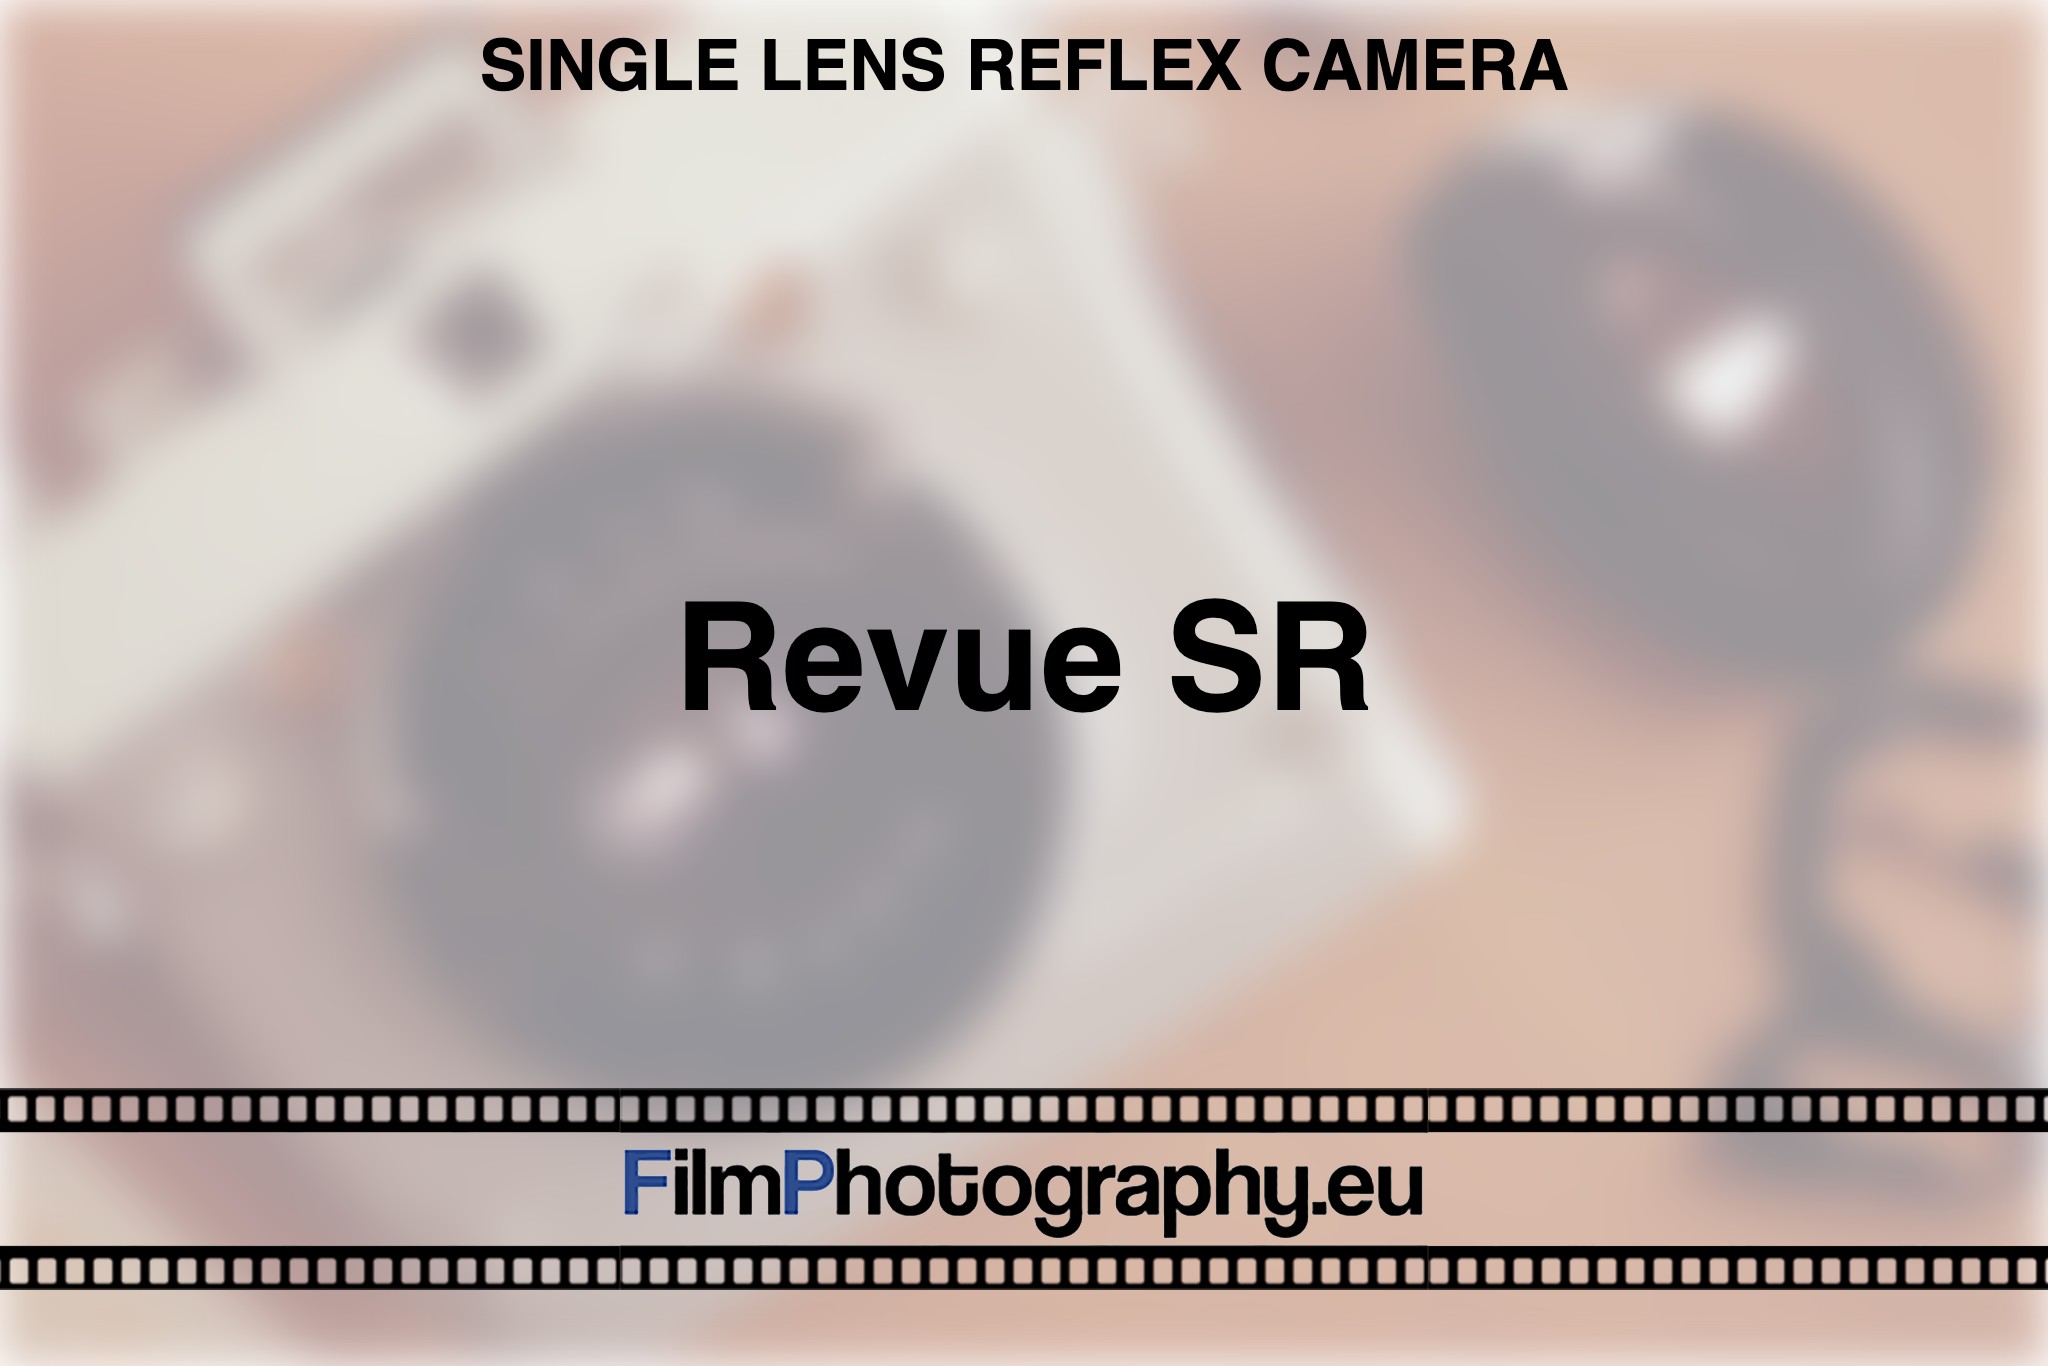 revue-sr-single-lens-reflex-camera-bnv